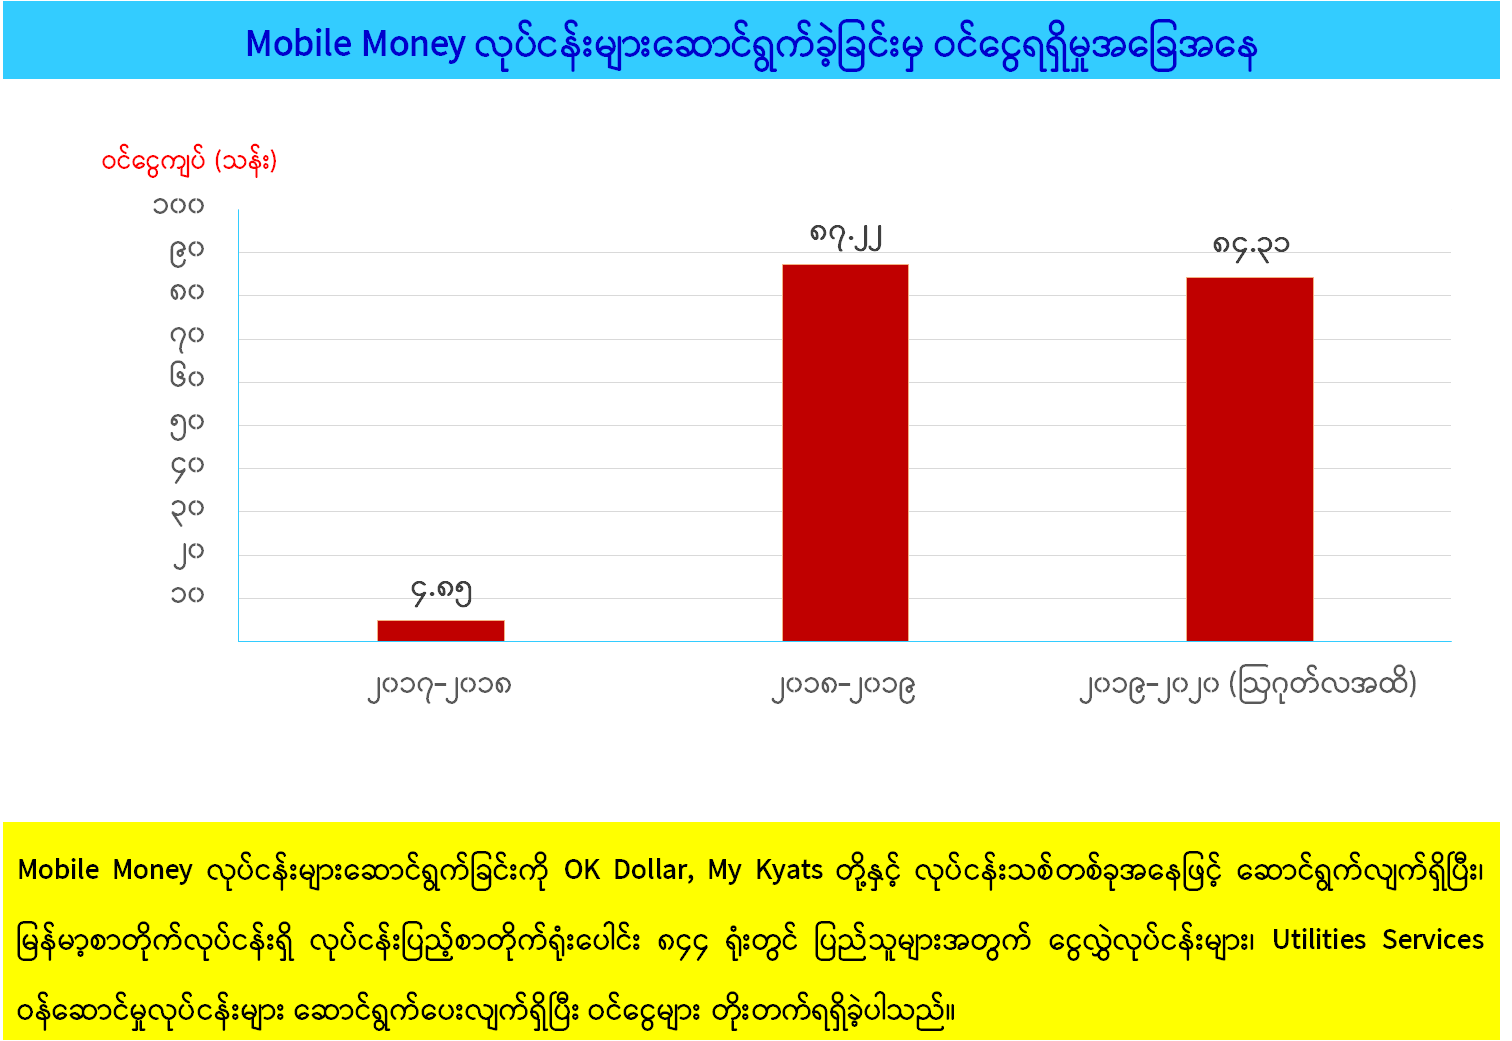 မြန်မာ့စာတိုက်လုပ်ငန်း၏ ၂၀၁၆-၂၀၁၇ မှ ၂၀၁၉-၂၀၂၀ ထိ  လုပ်ငန်းဆောင်ရွက်တိုးတက်မှု (၁)